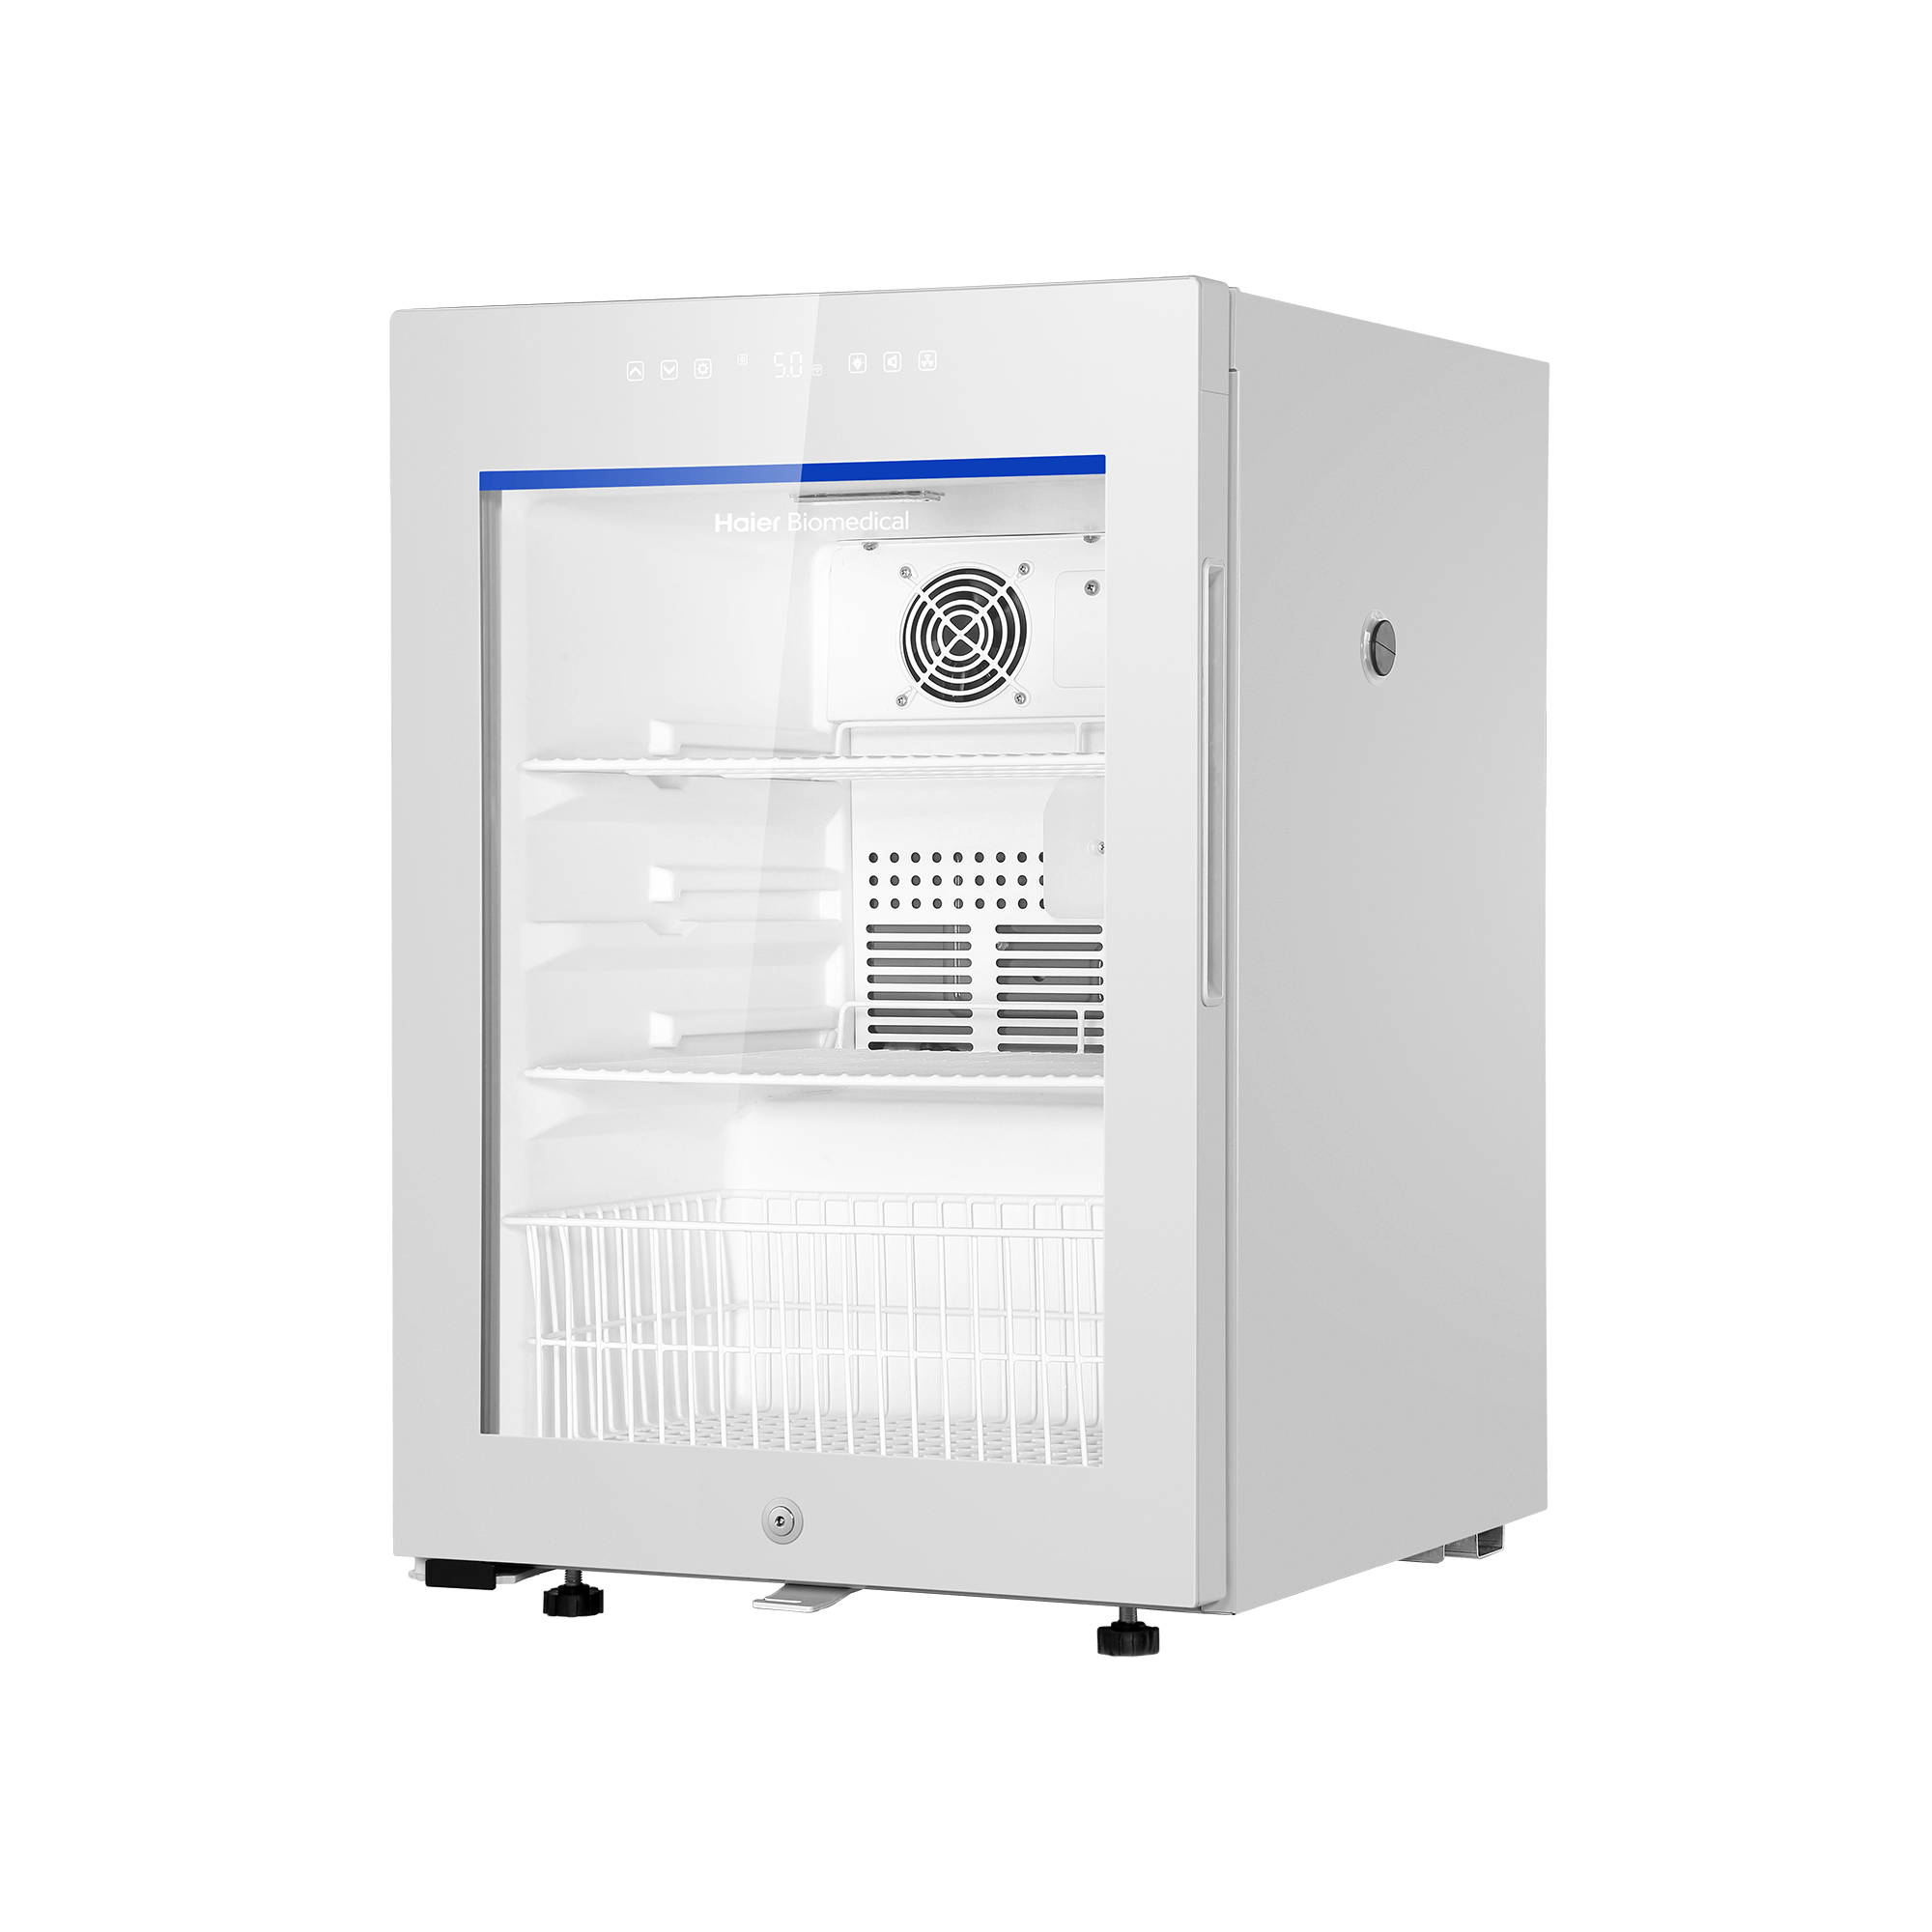 Produktfoto: HAIER Medikamentenkühlschrank HYC-85GD mit Umluftkühlung, 85 Liter